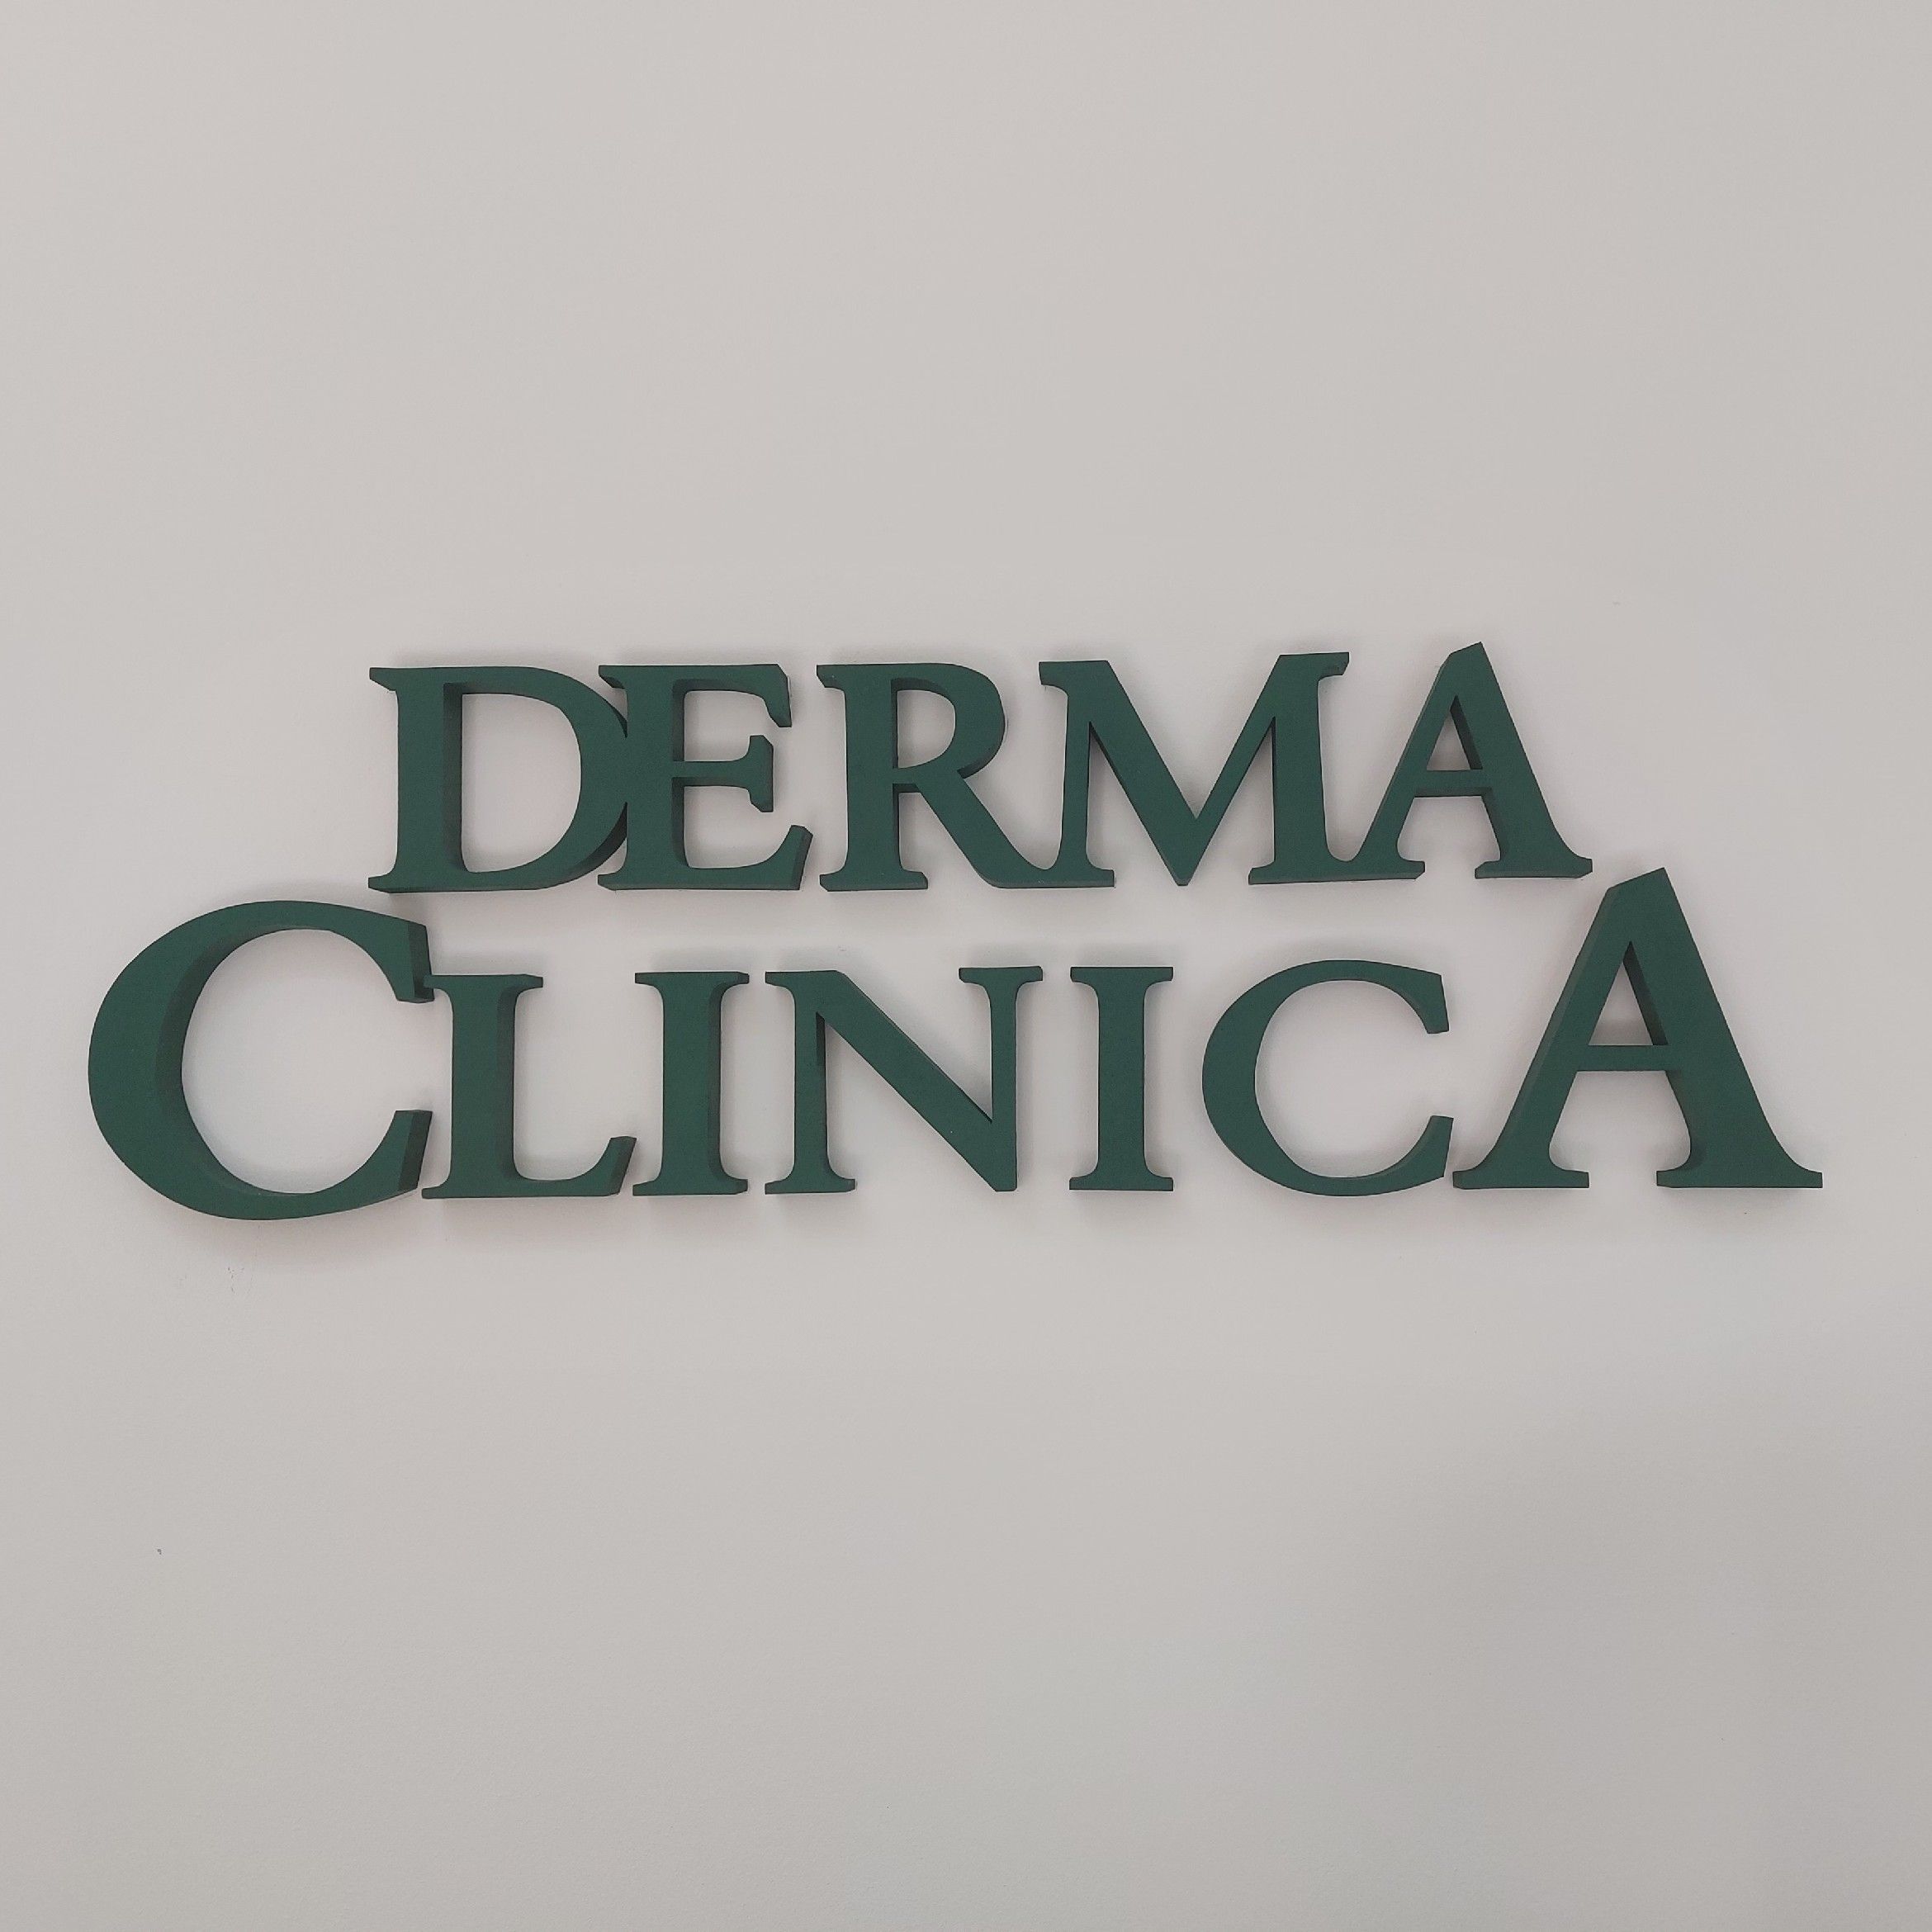 Derma Clinica Kraków, Rydlówka 44, 31-511, Kraków, Śródmieście